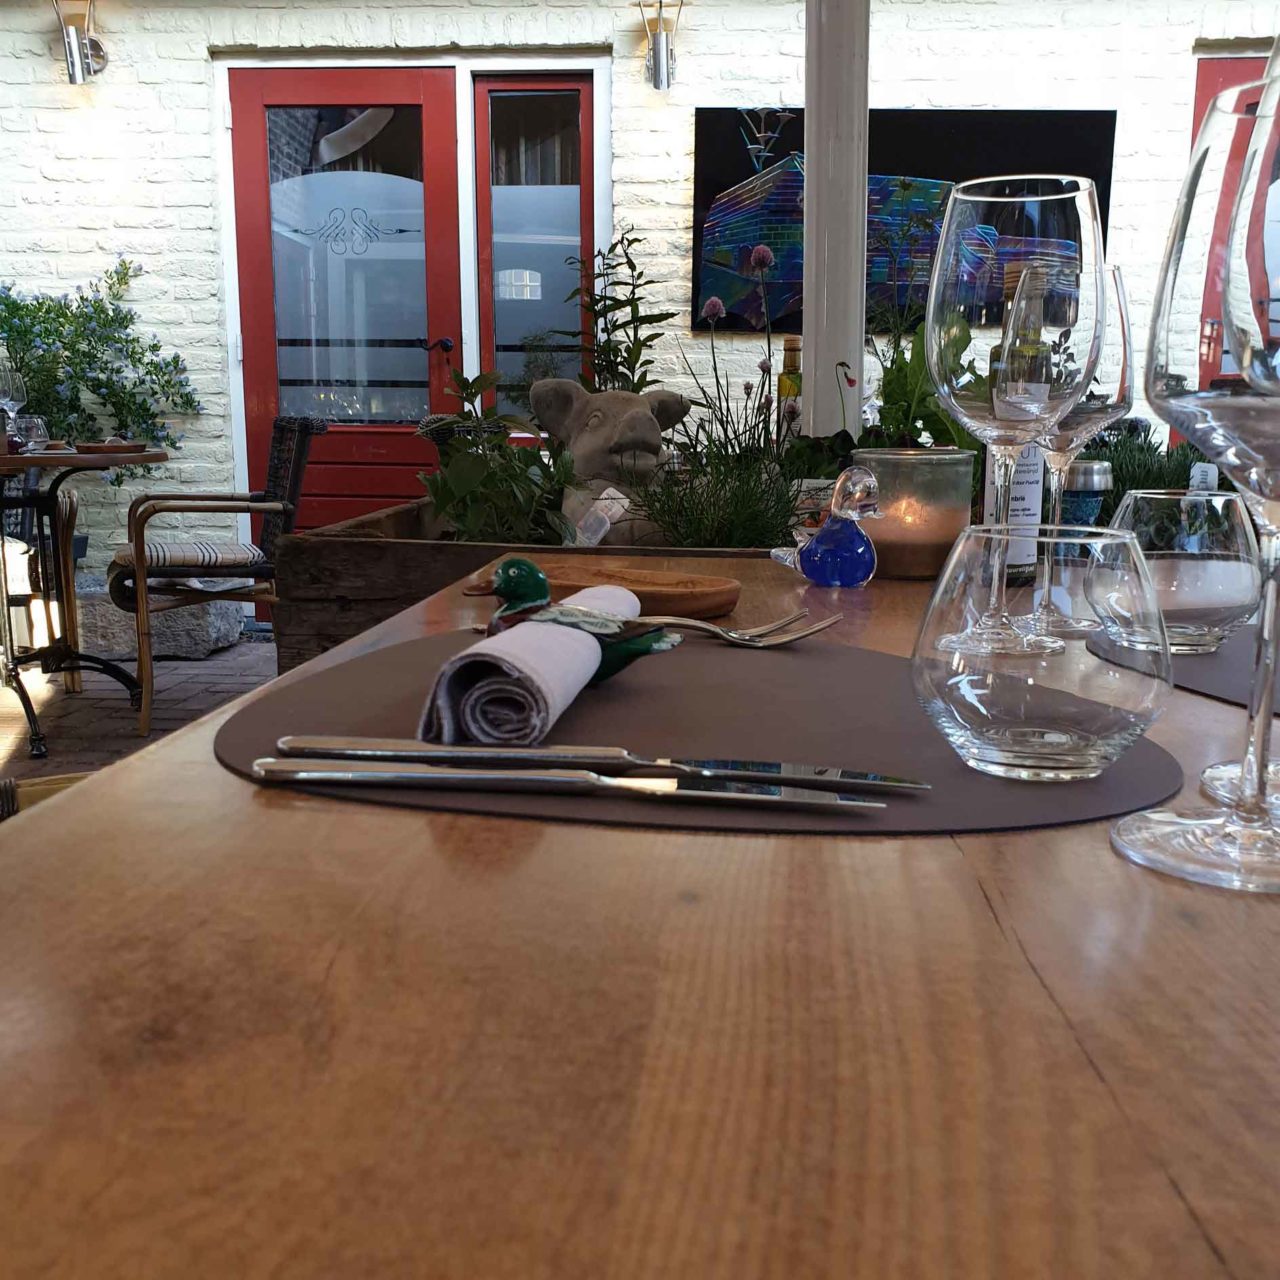 Aan Sjuuteeänjd ristorante sostenibile Olanda tavolo